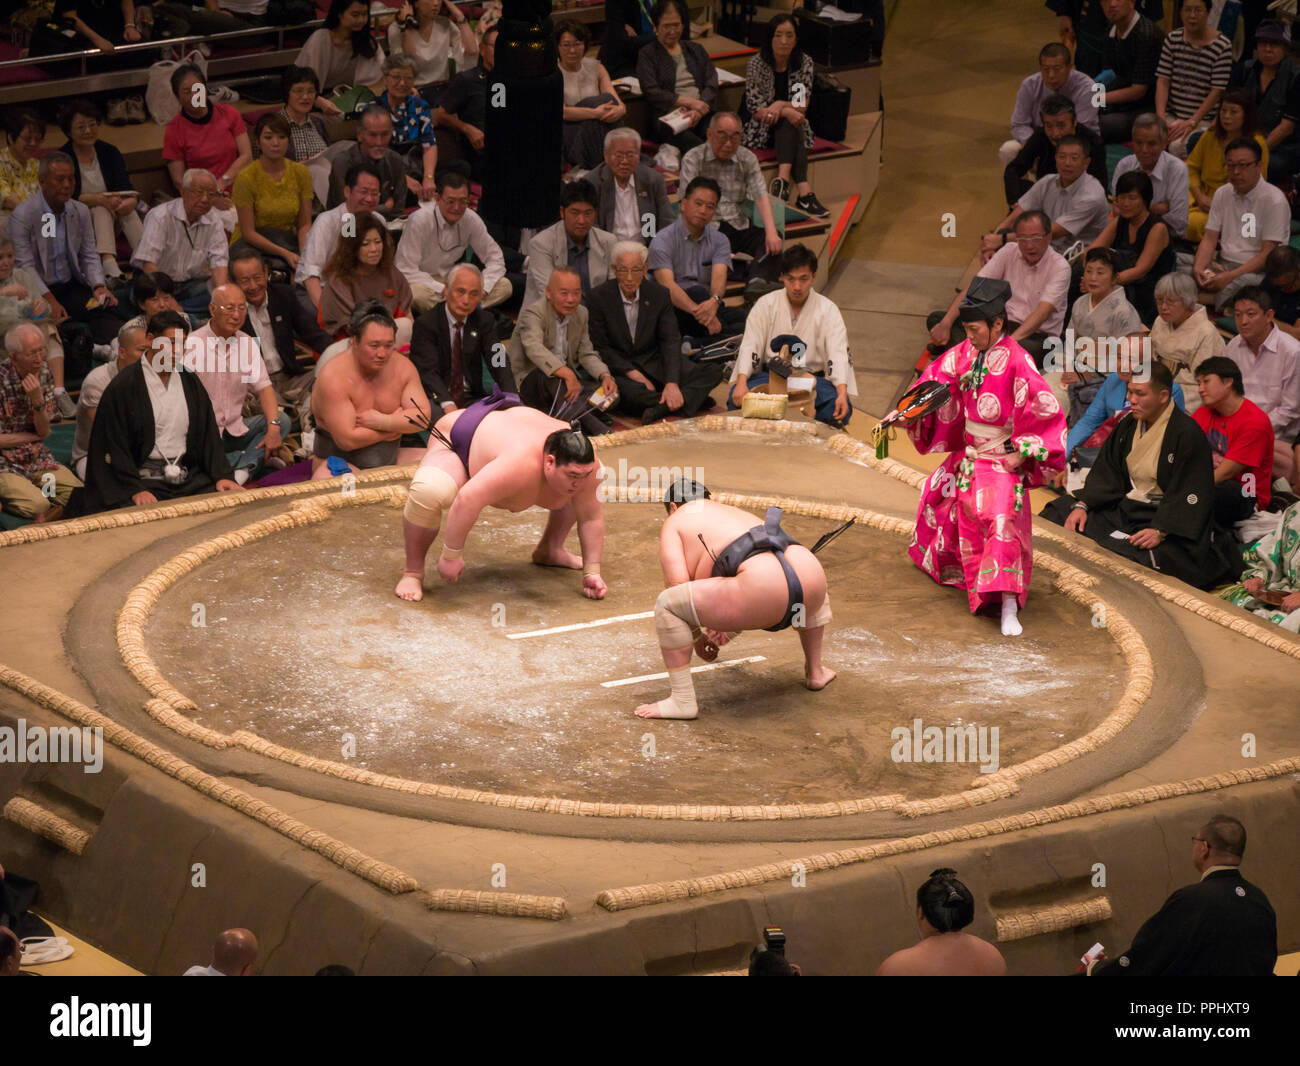 Tokio, Japan. September 9, 2018. : Richter und Sumo Ringer in der Tokyo Grand Sumo Turnier in 2018. Stockfoto